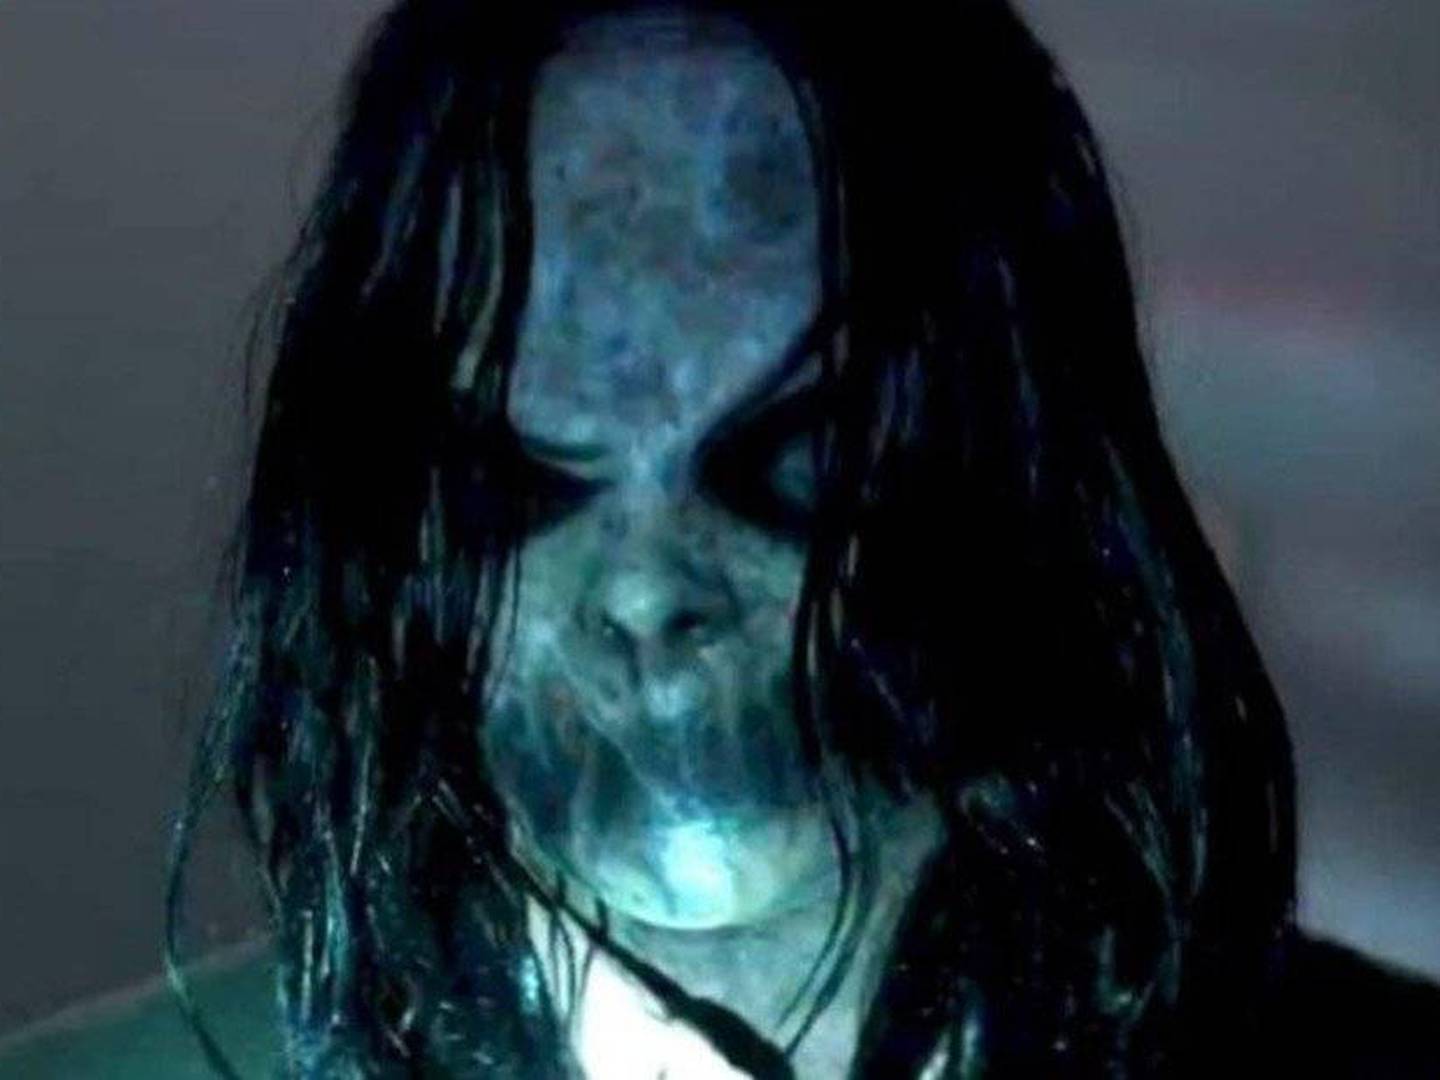 Os filmes de terror mais assustadores, segundo a Science of Scare